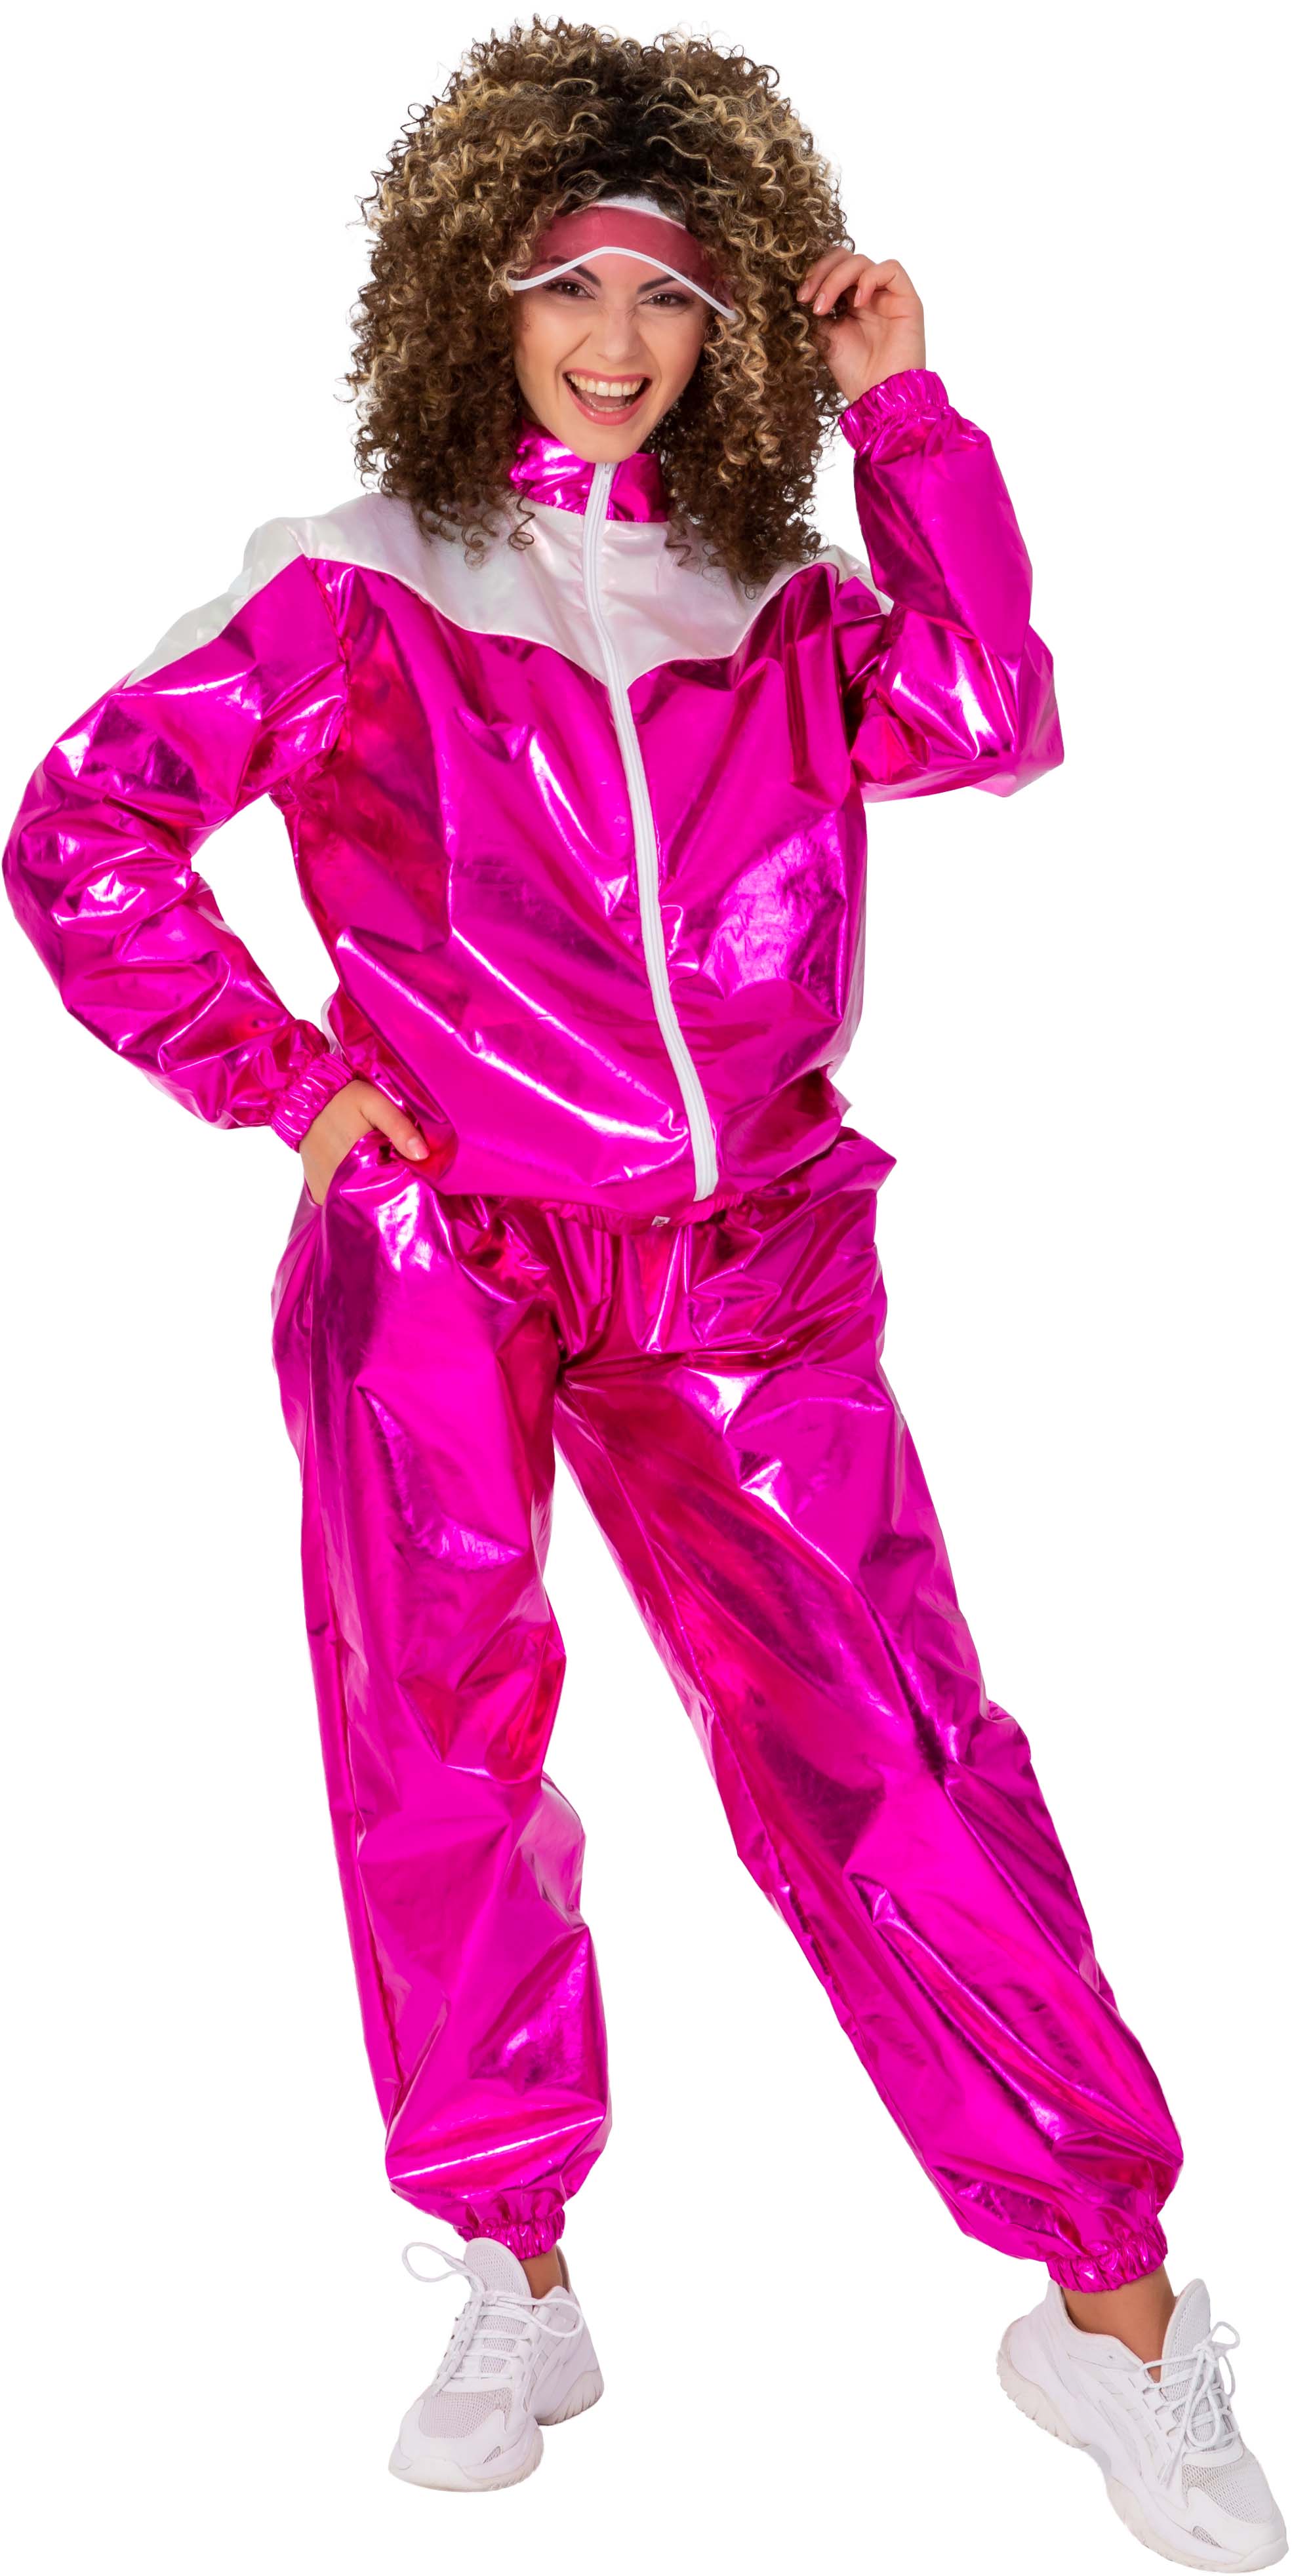 Jogging suit vinyl, pink